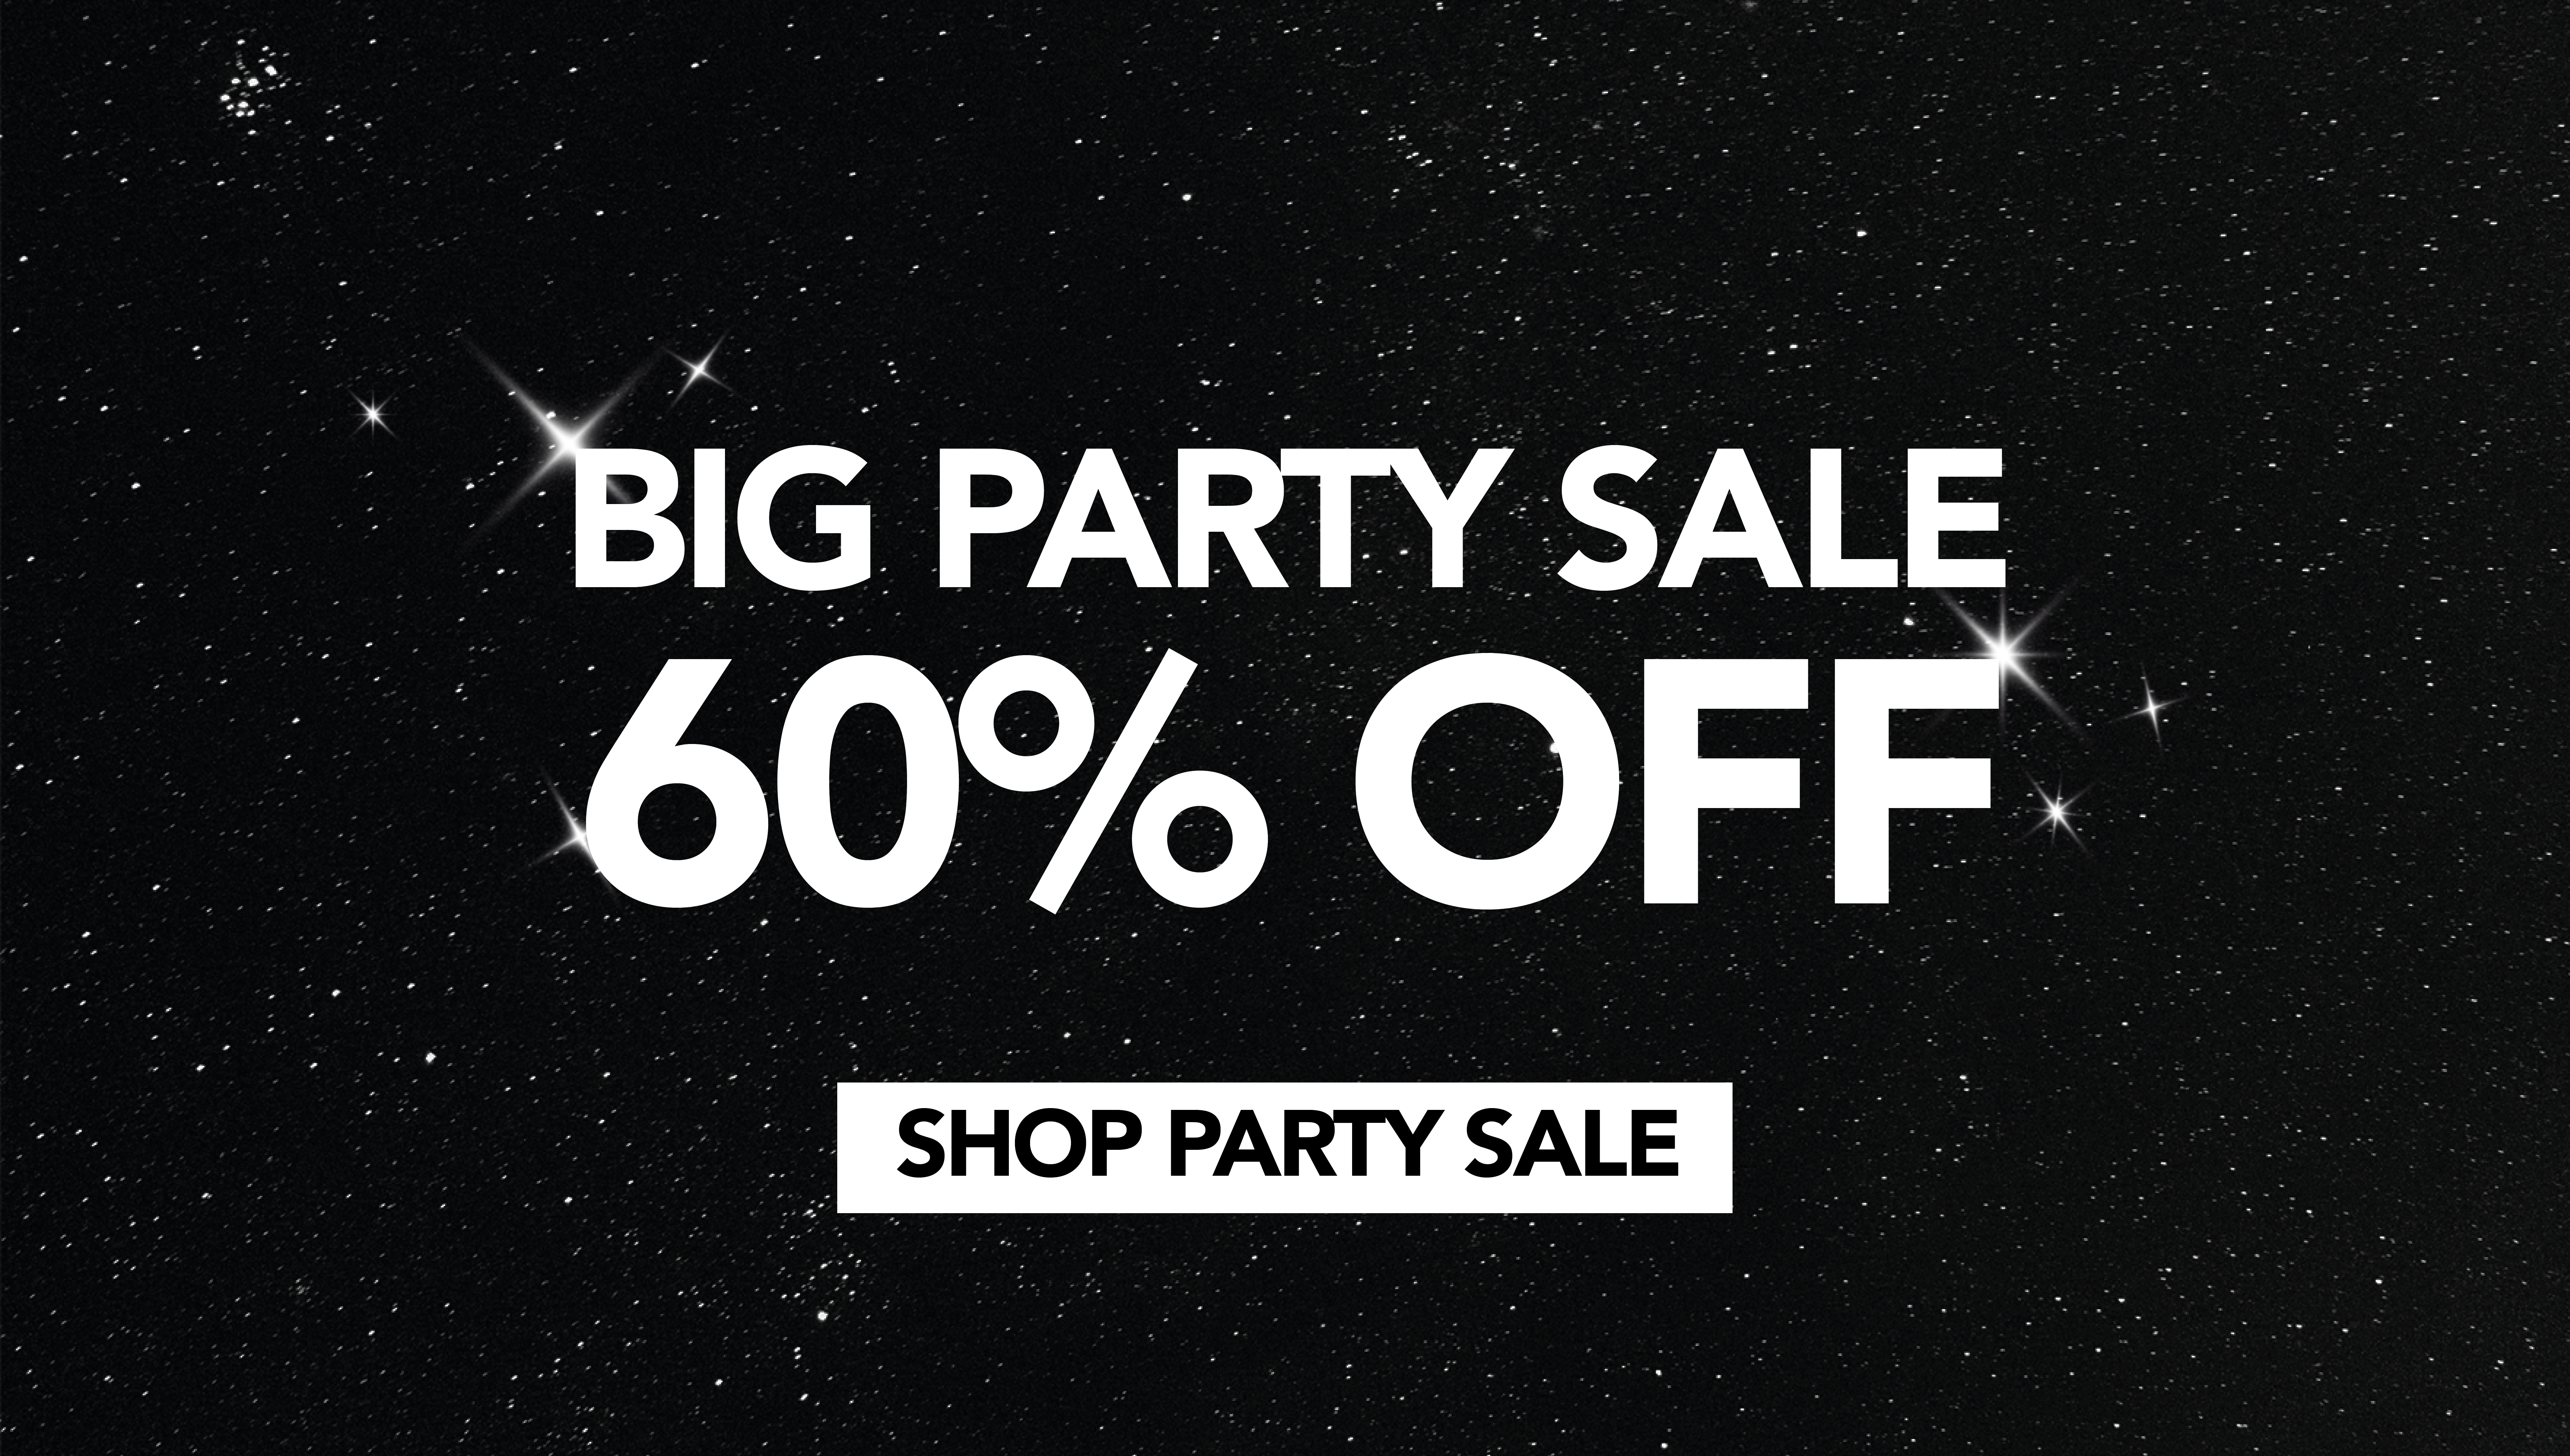 Party sale